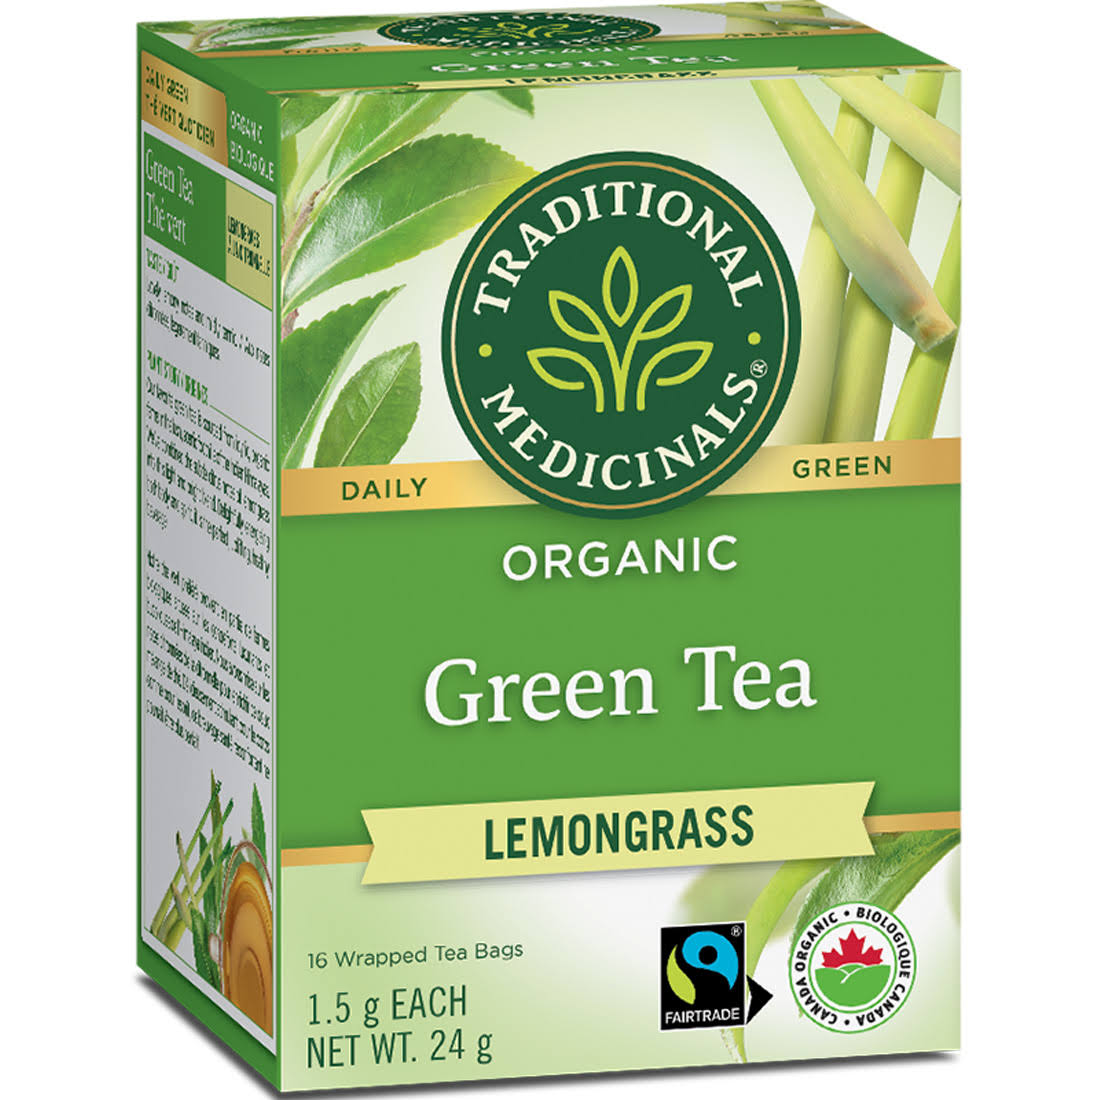 Traditional Medicinals Organic Green Tea - with Lemongrass, 20 Tea Bags